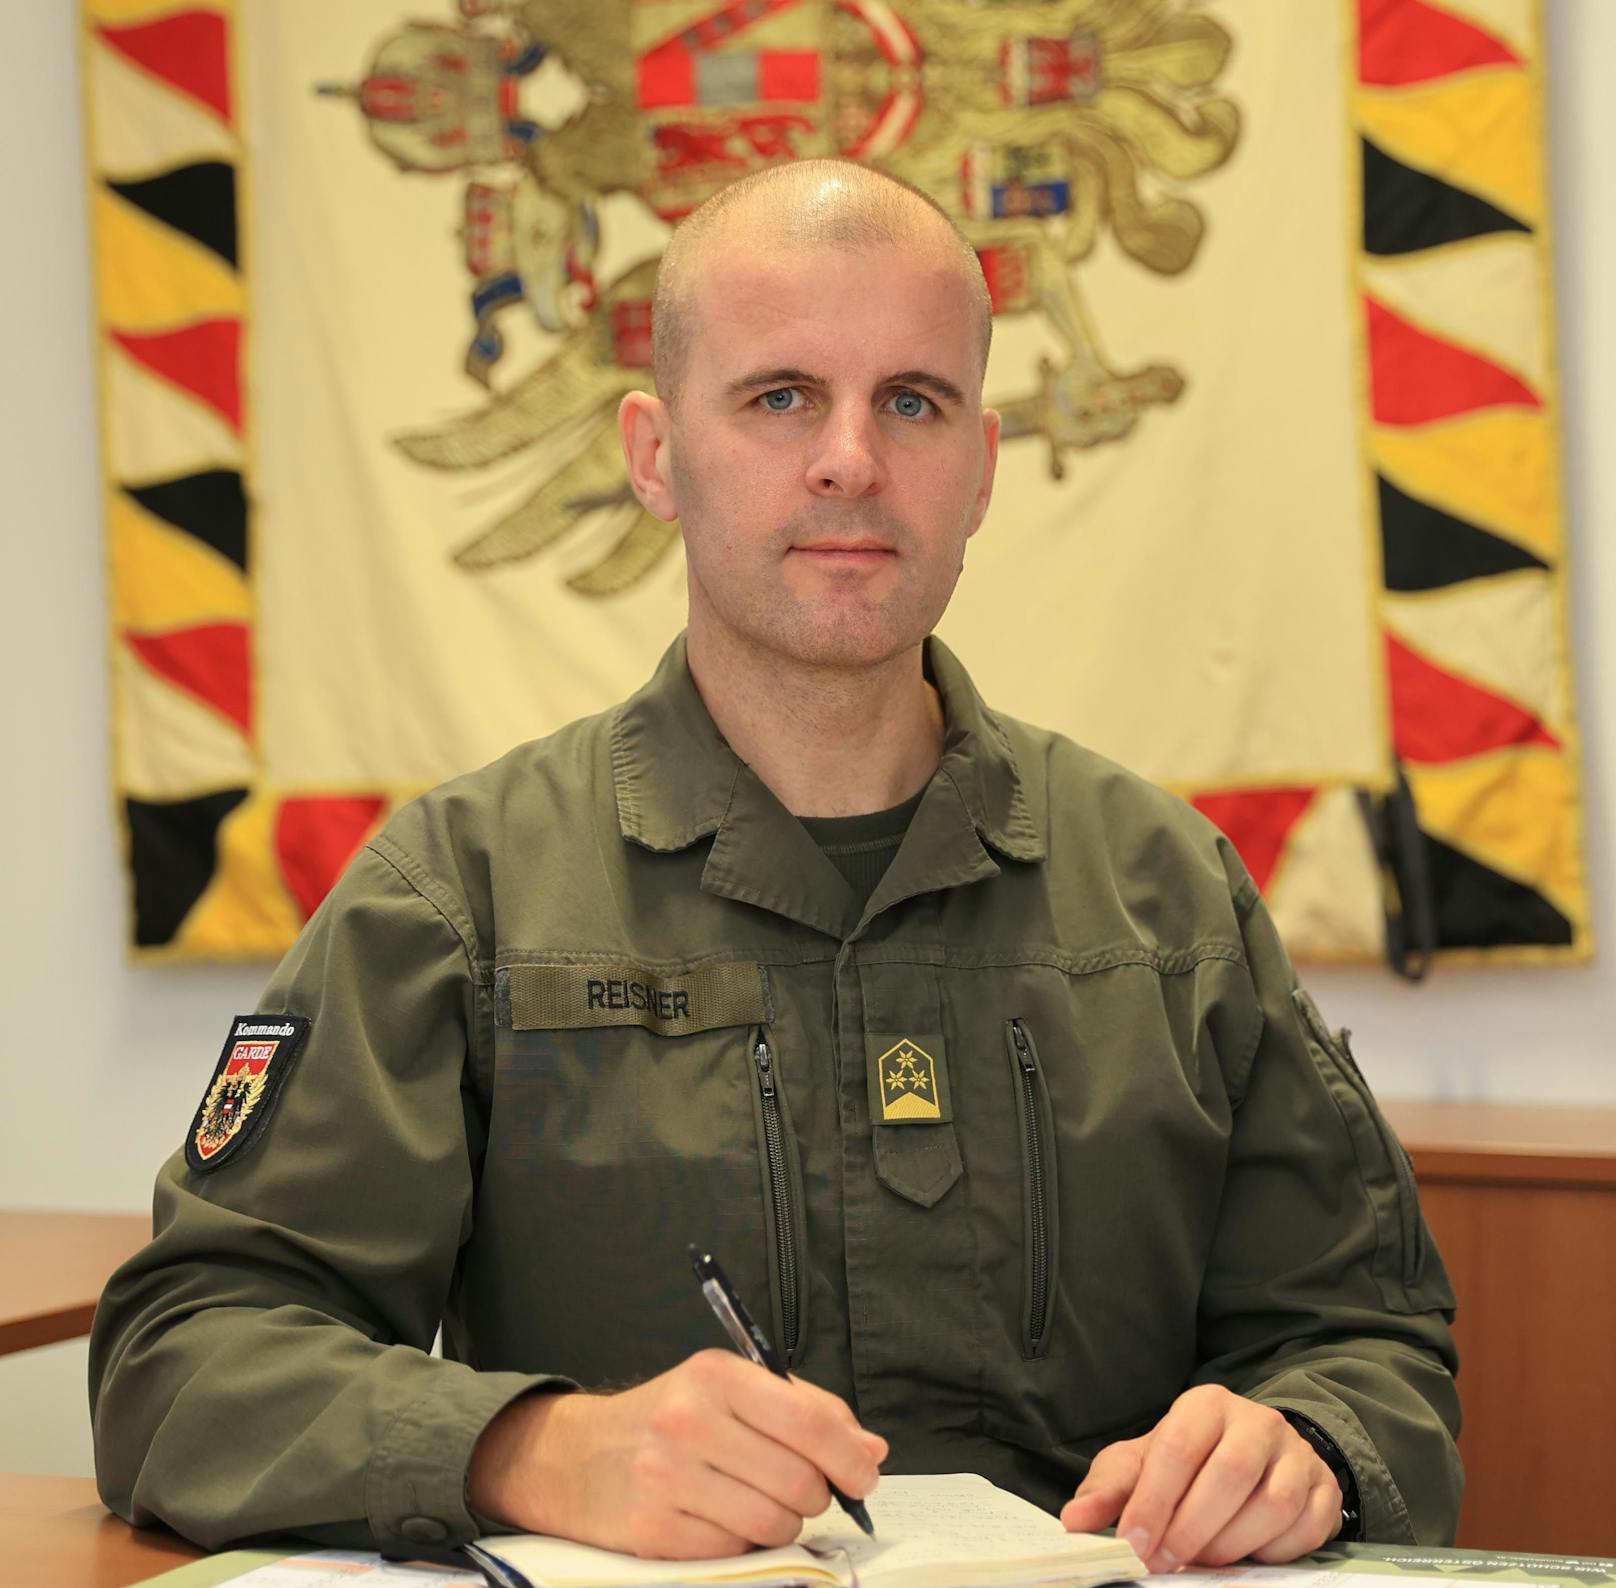 Der neue Garde-Kommandant Markus Reisner greift nun hart durch, sagt: "Die Garde muss im 21. Jahrhundert ankommen"